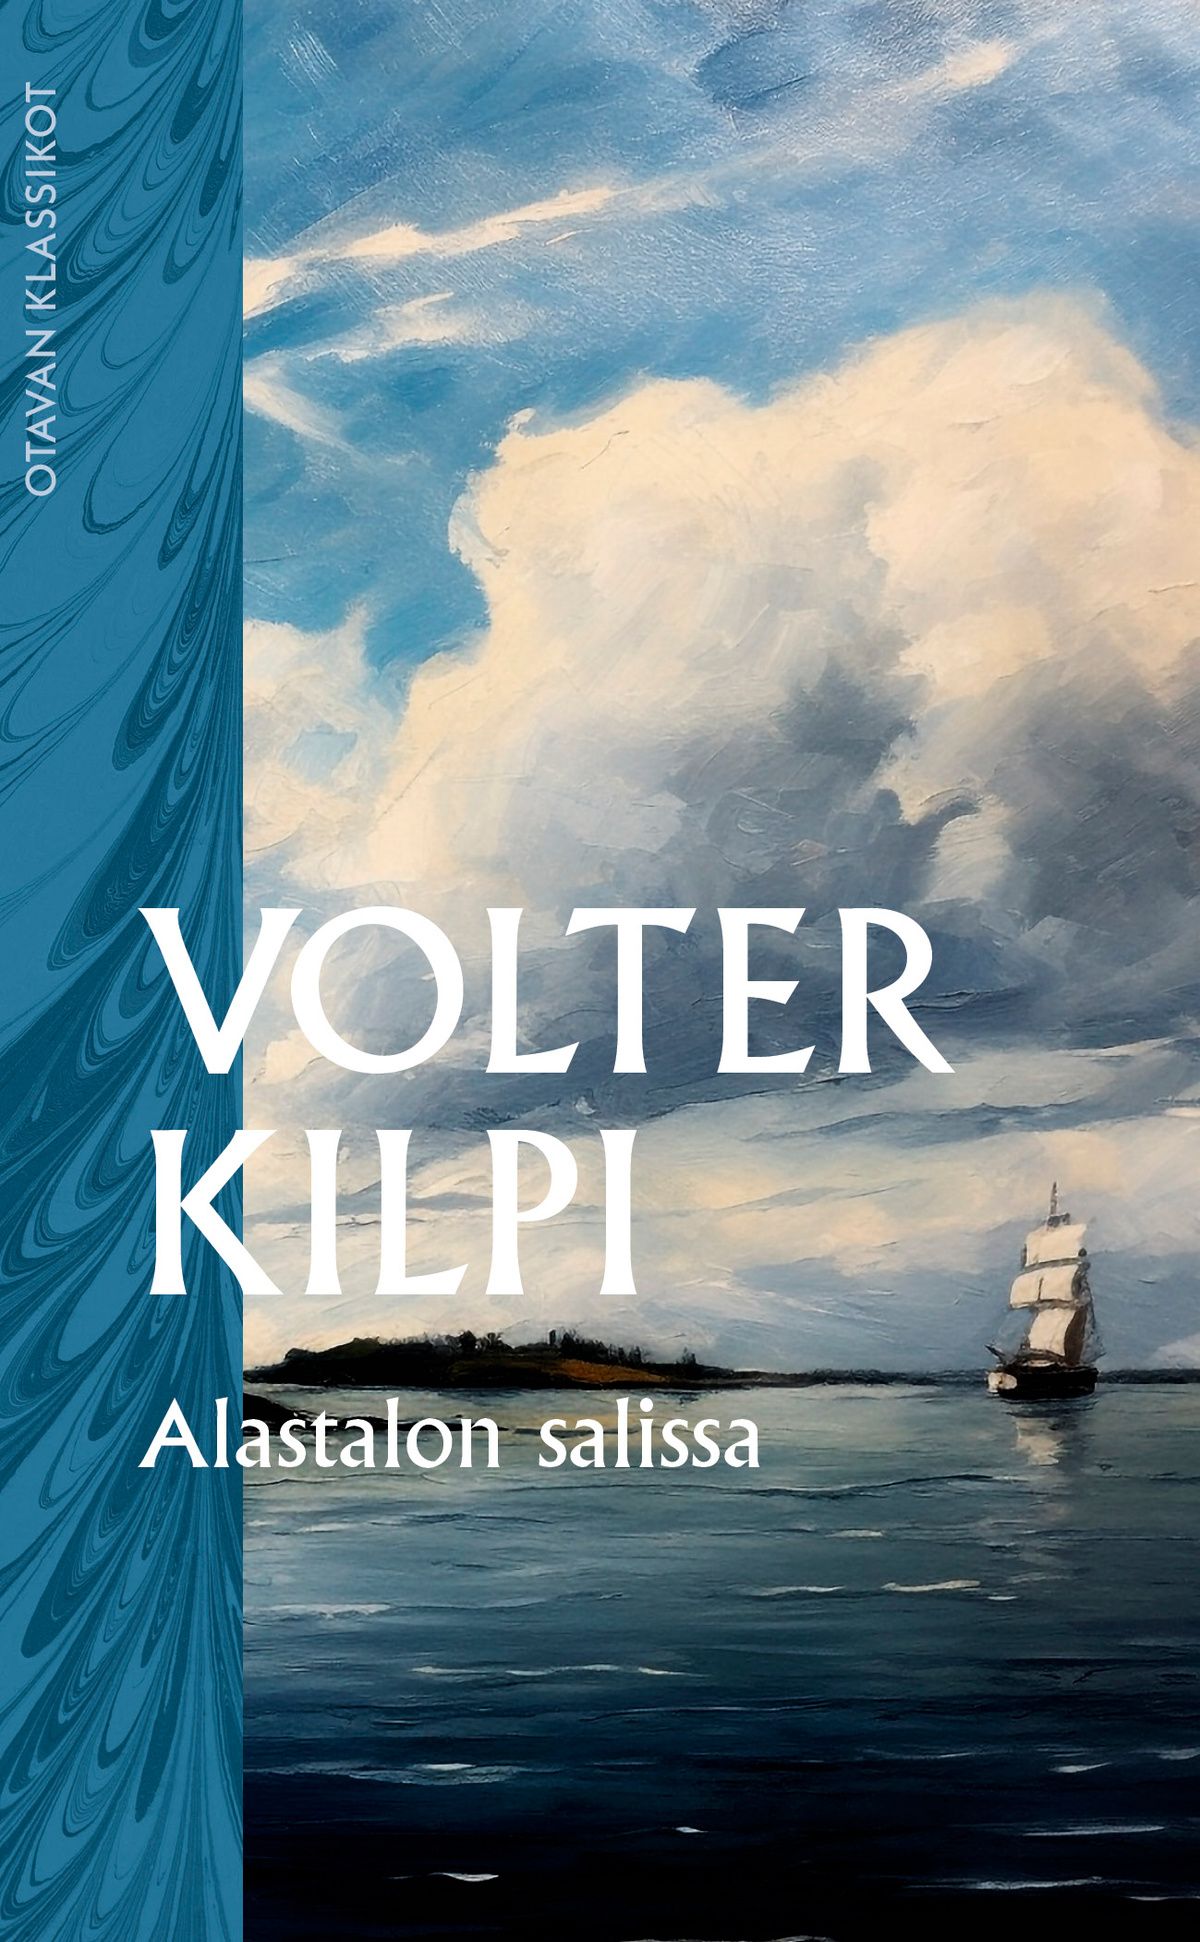 Volter Kilpi: Alastalon salissa : kuvaus saaristosta (Finnish language, 2007)